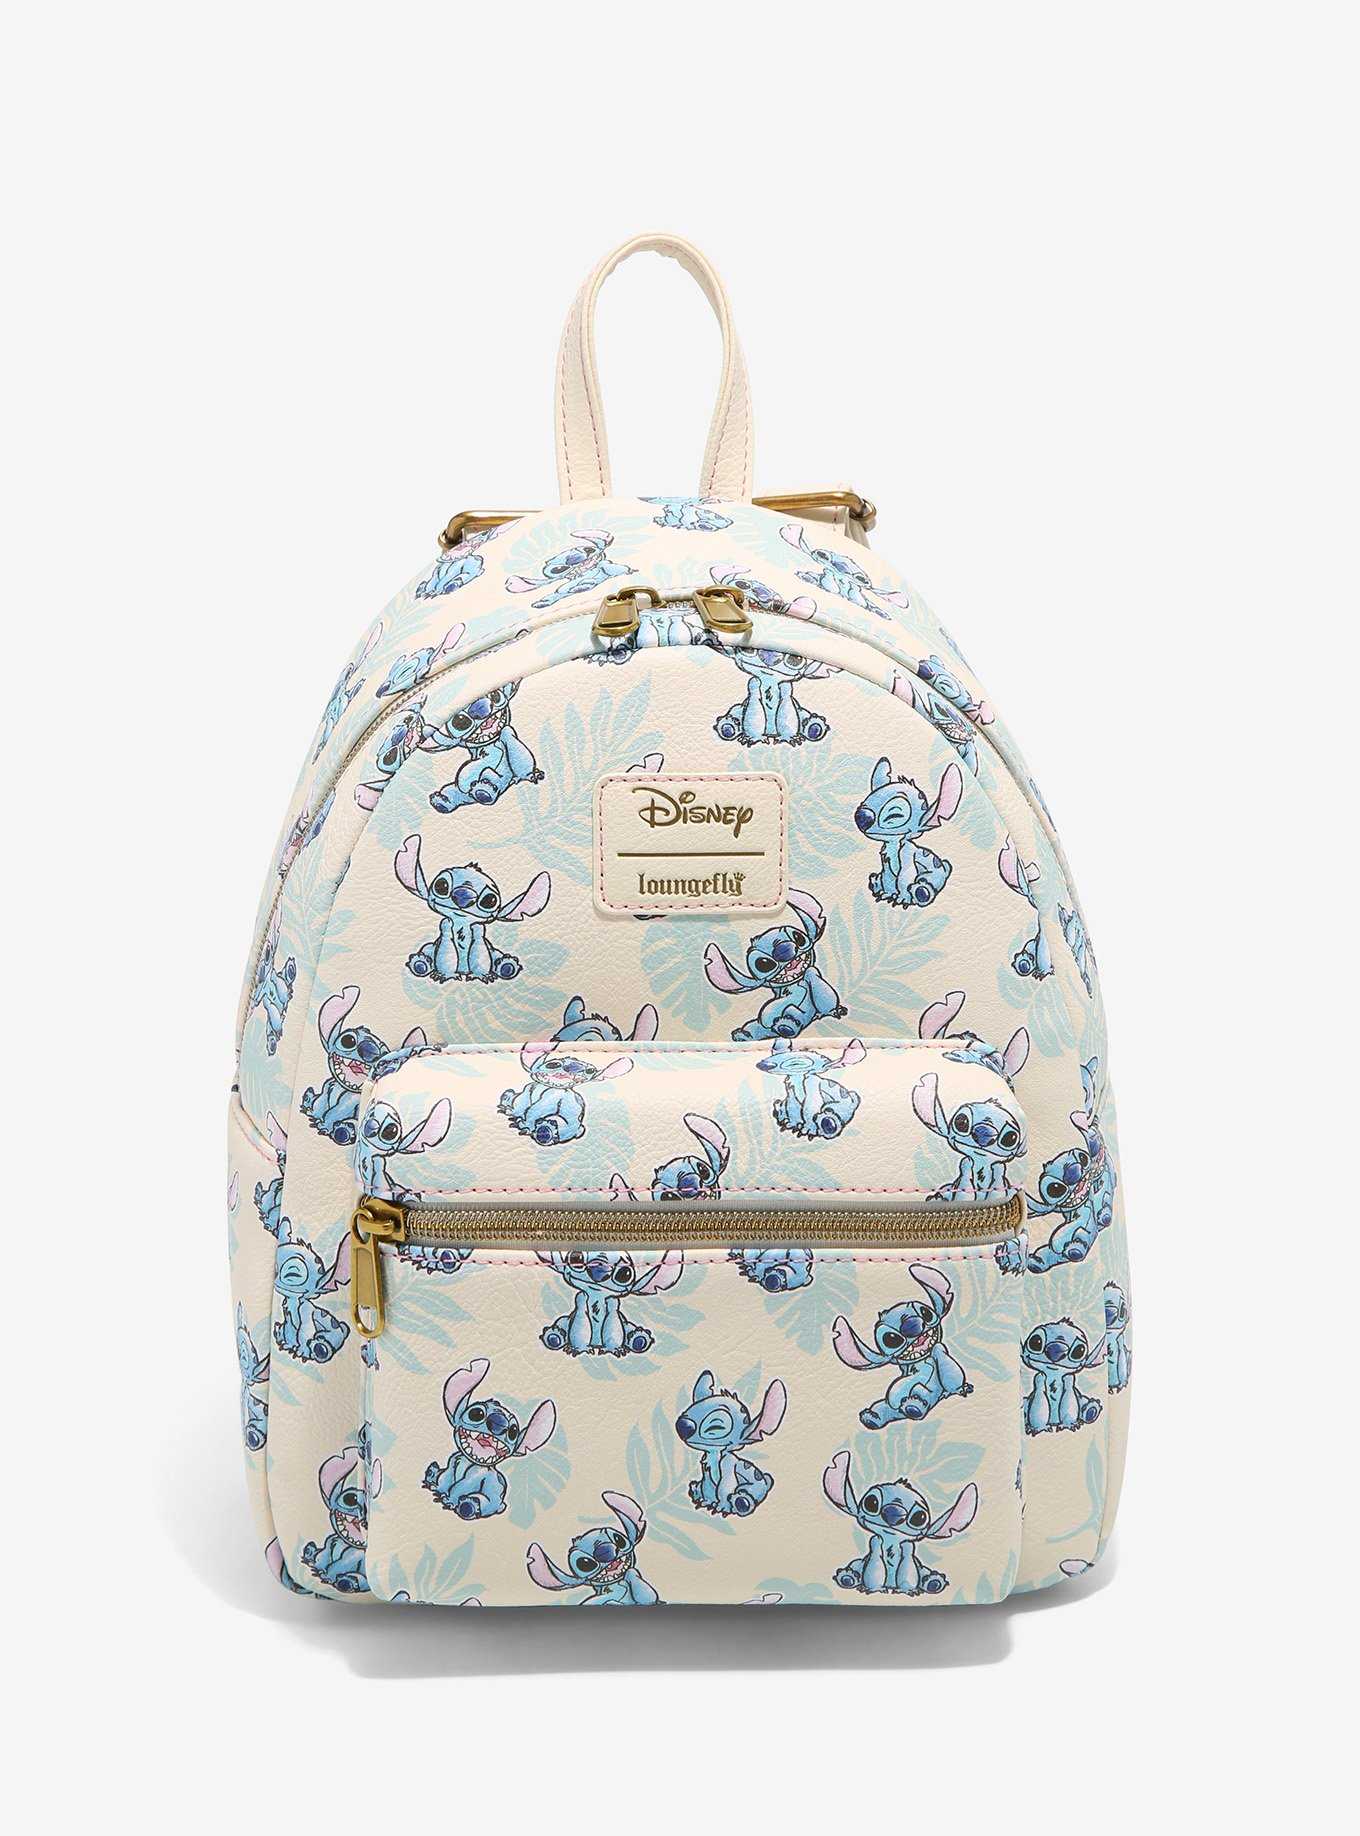 Disney Loungefly Stitch Tropical Crossbody Bag Purse NWT